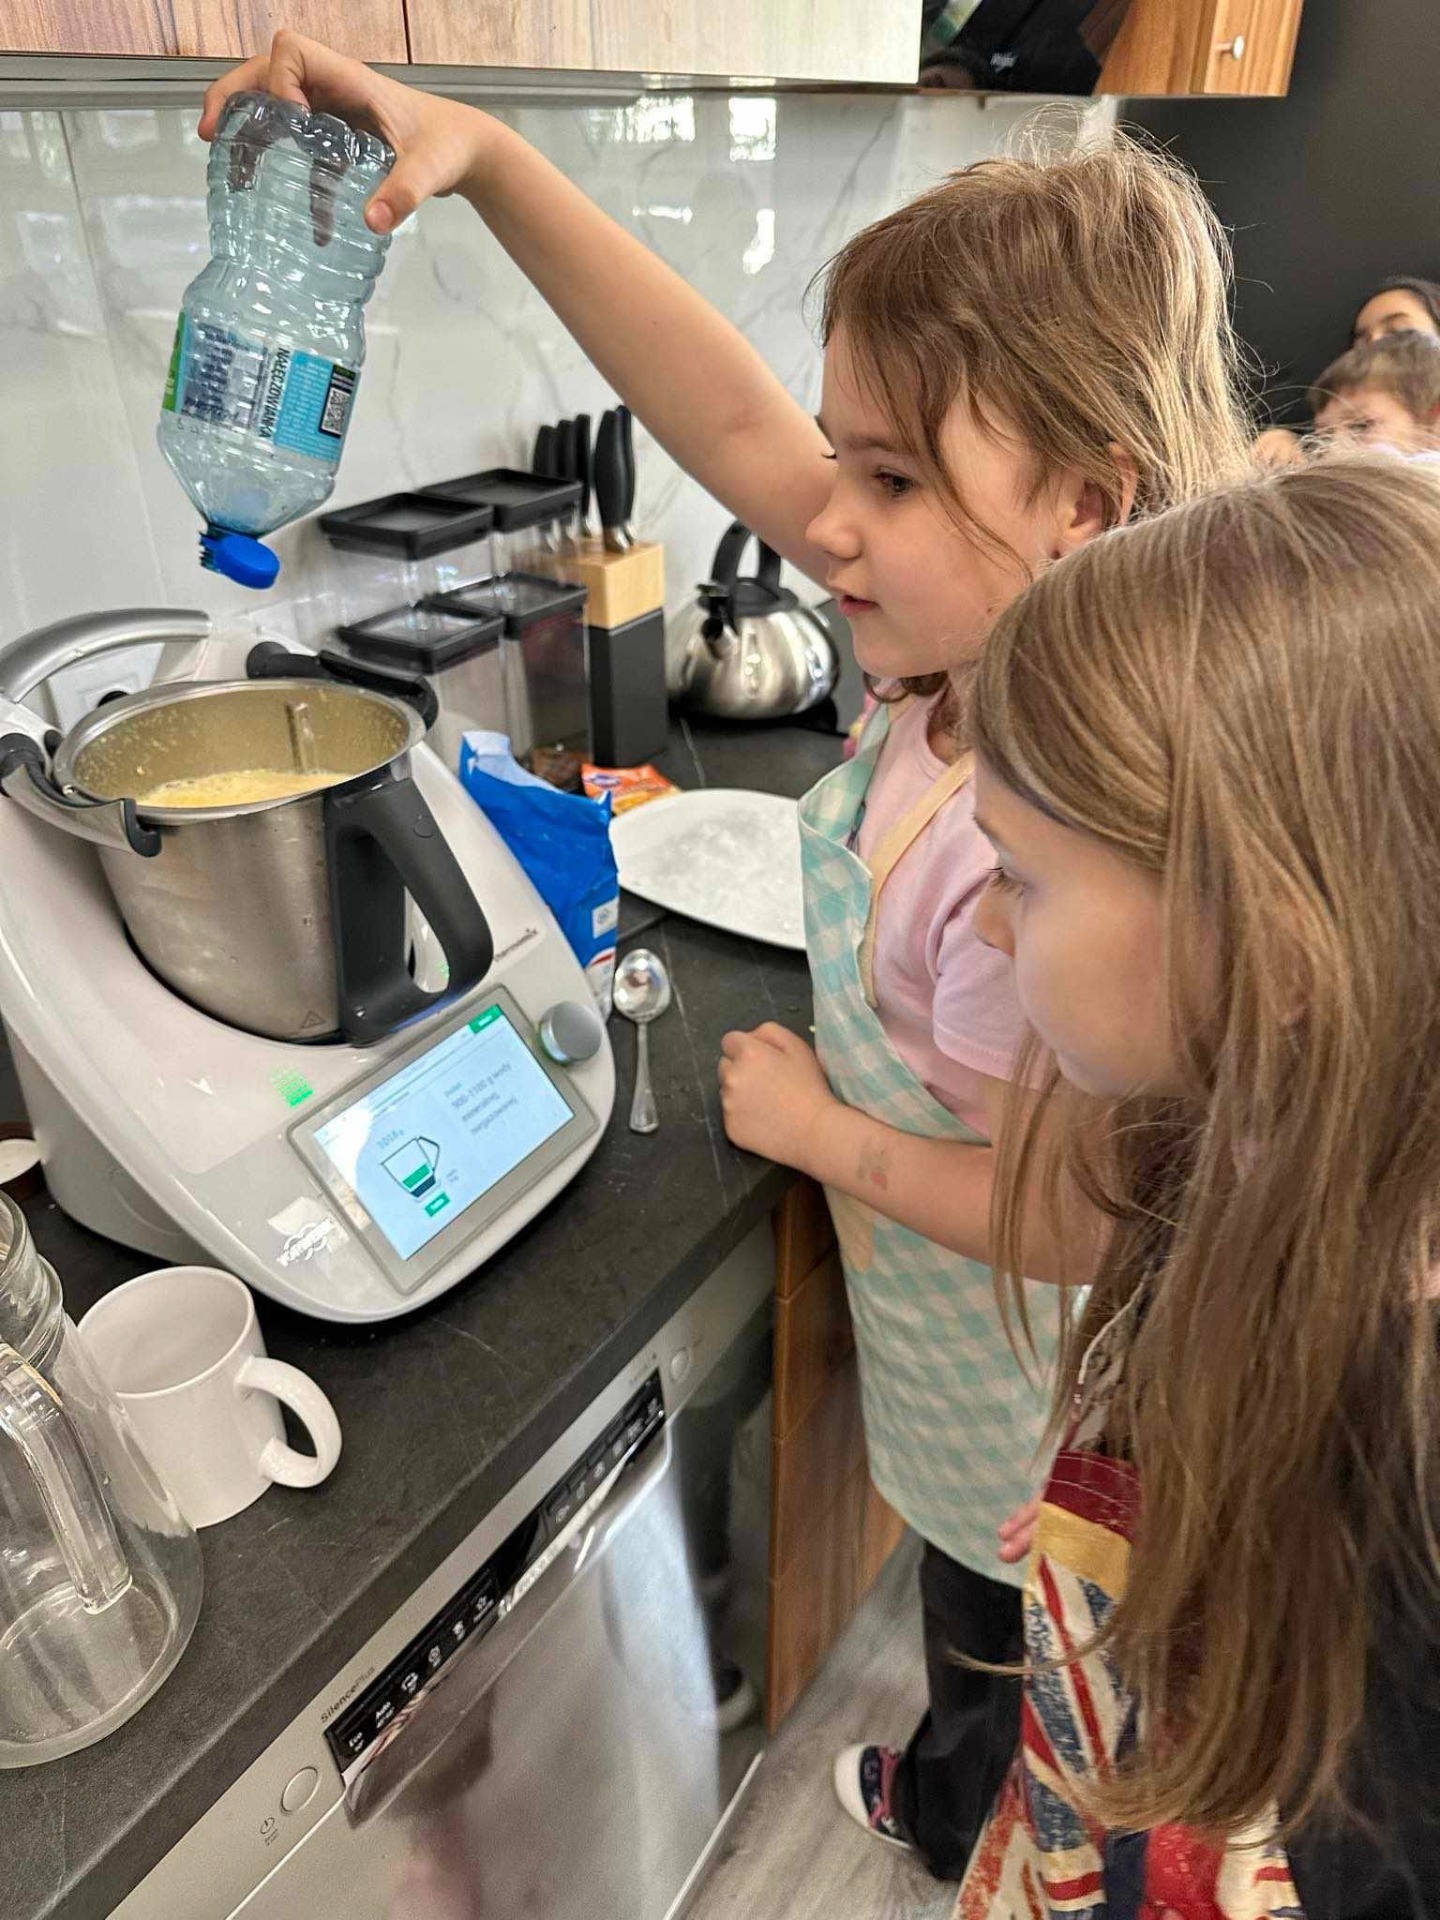 Na zdjęciu widzimy scenę w kuchni, gdzie dwójka dzieci zaangażowana jest w działania kulinarno-edukacyjne. Skupiamy się na dziecku, które nalewa wodę z przezroczystej plastikowej butelki.